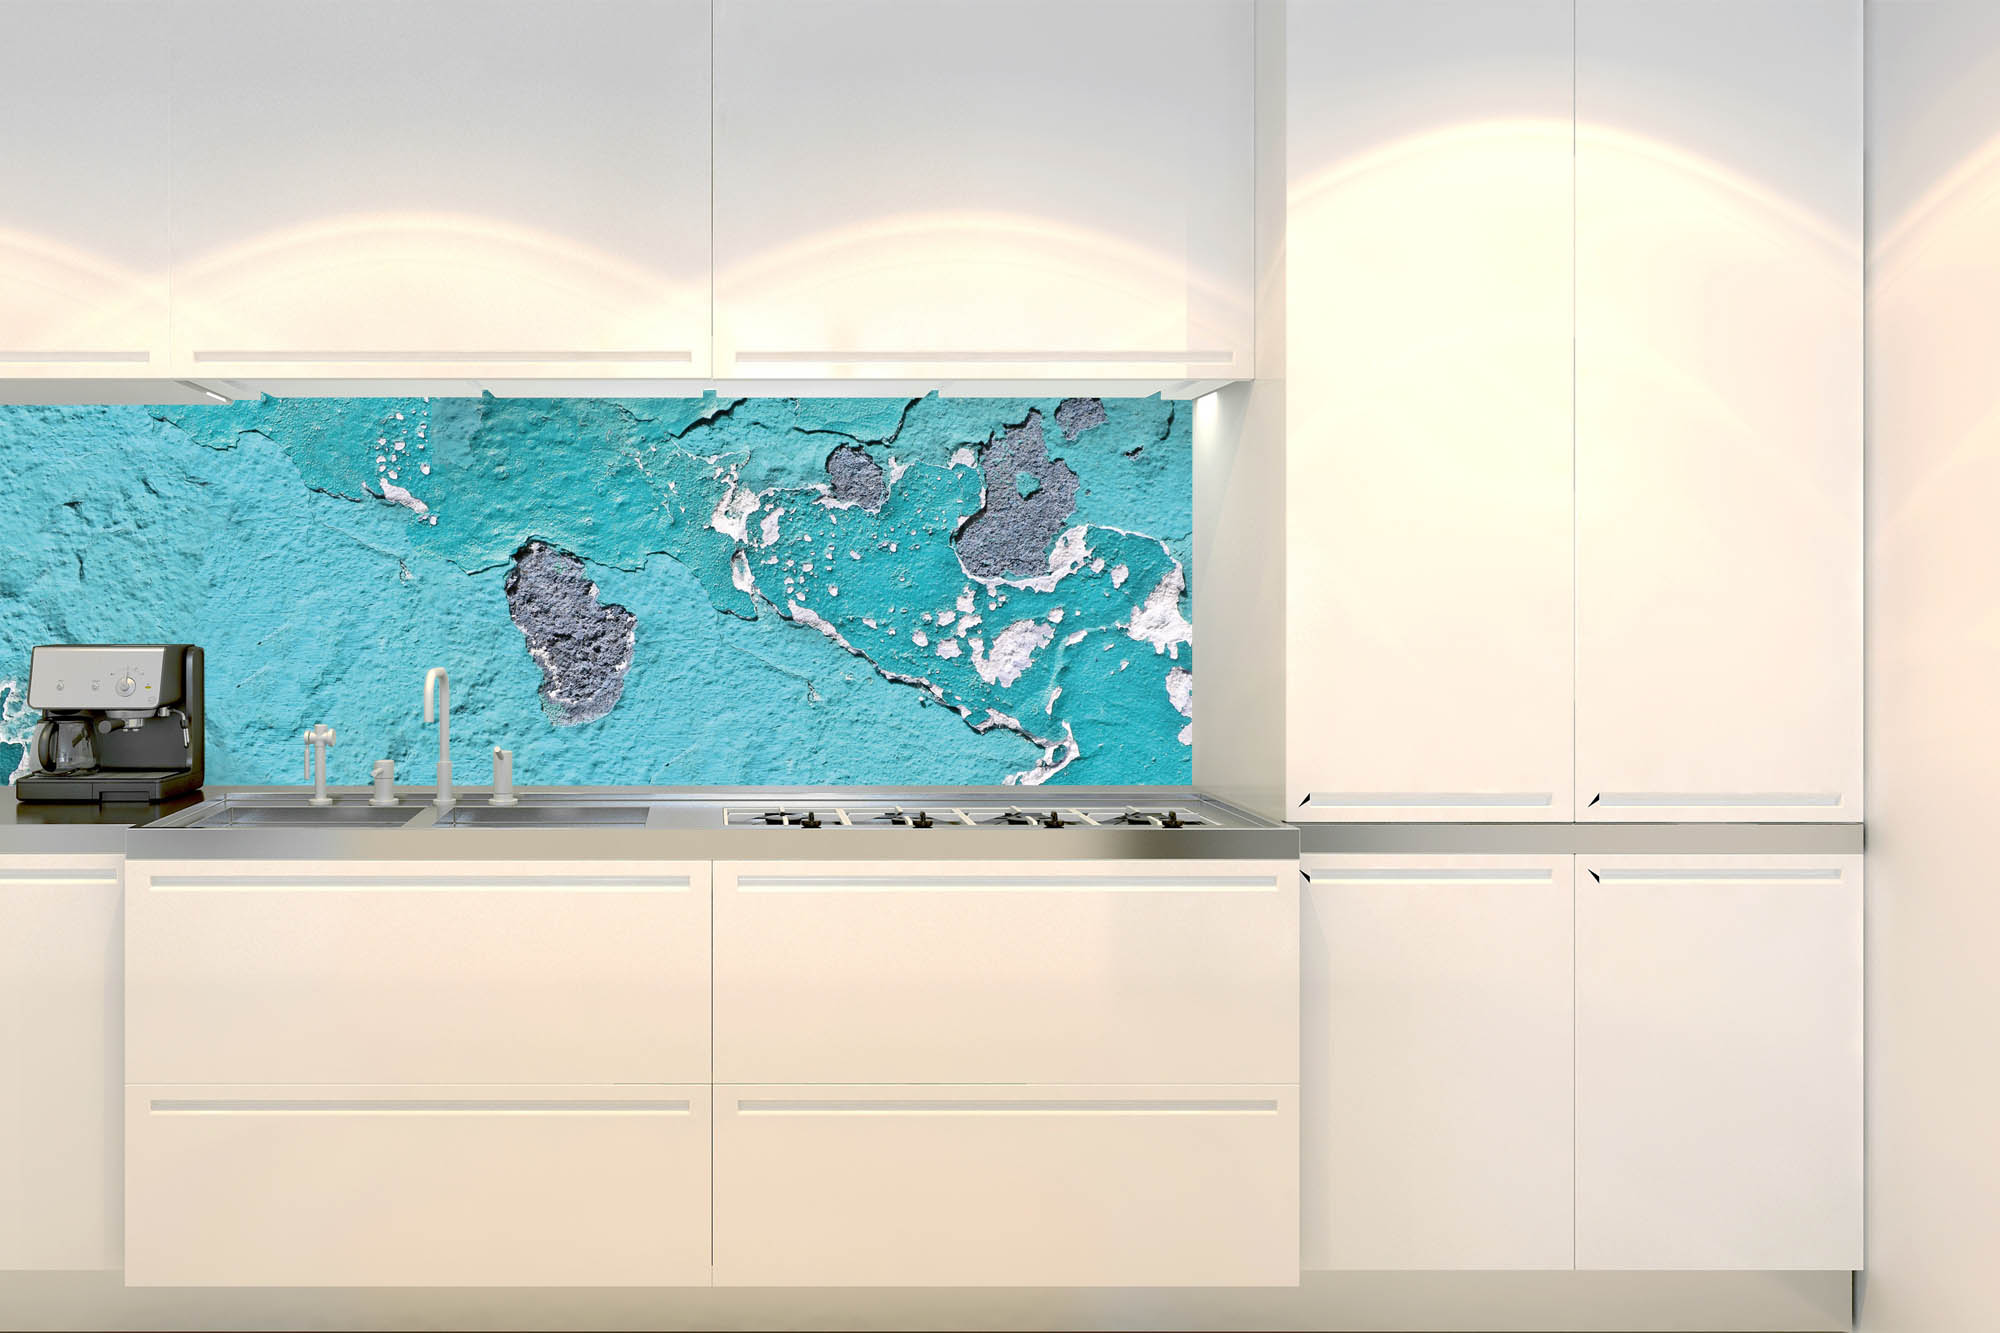 Küchenrückwand Folie - Wand mit abblätternder Farbe 180 x 60 cm